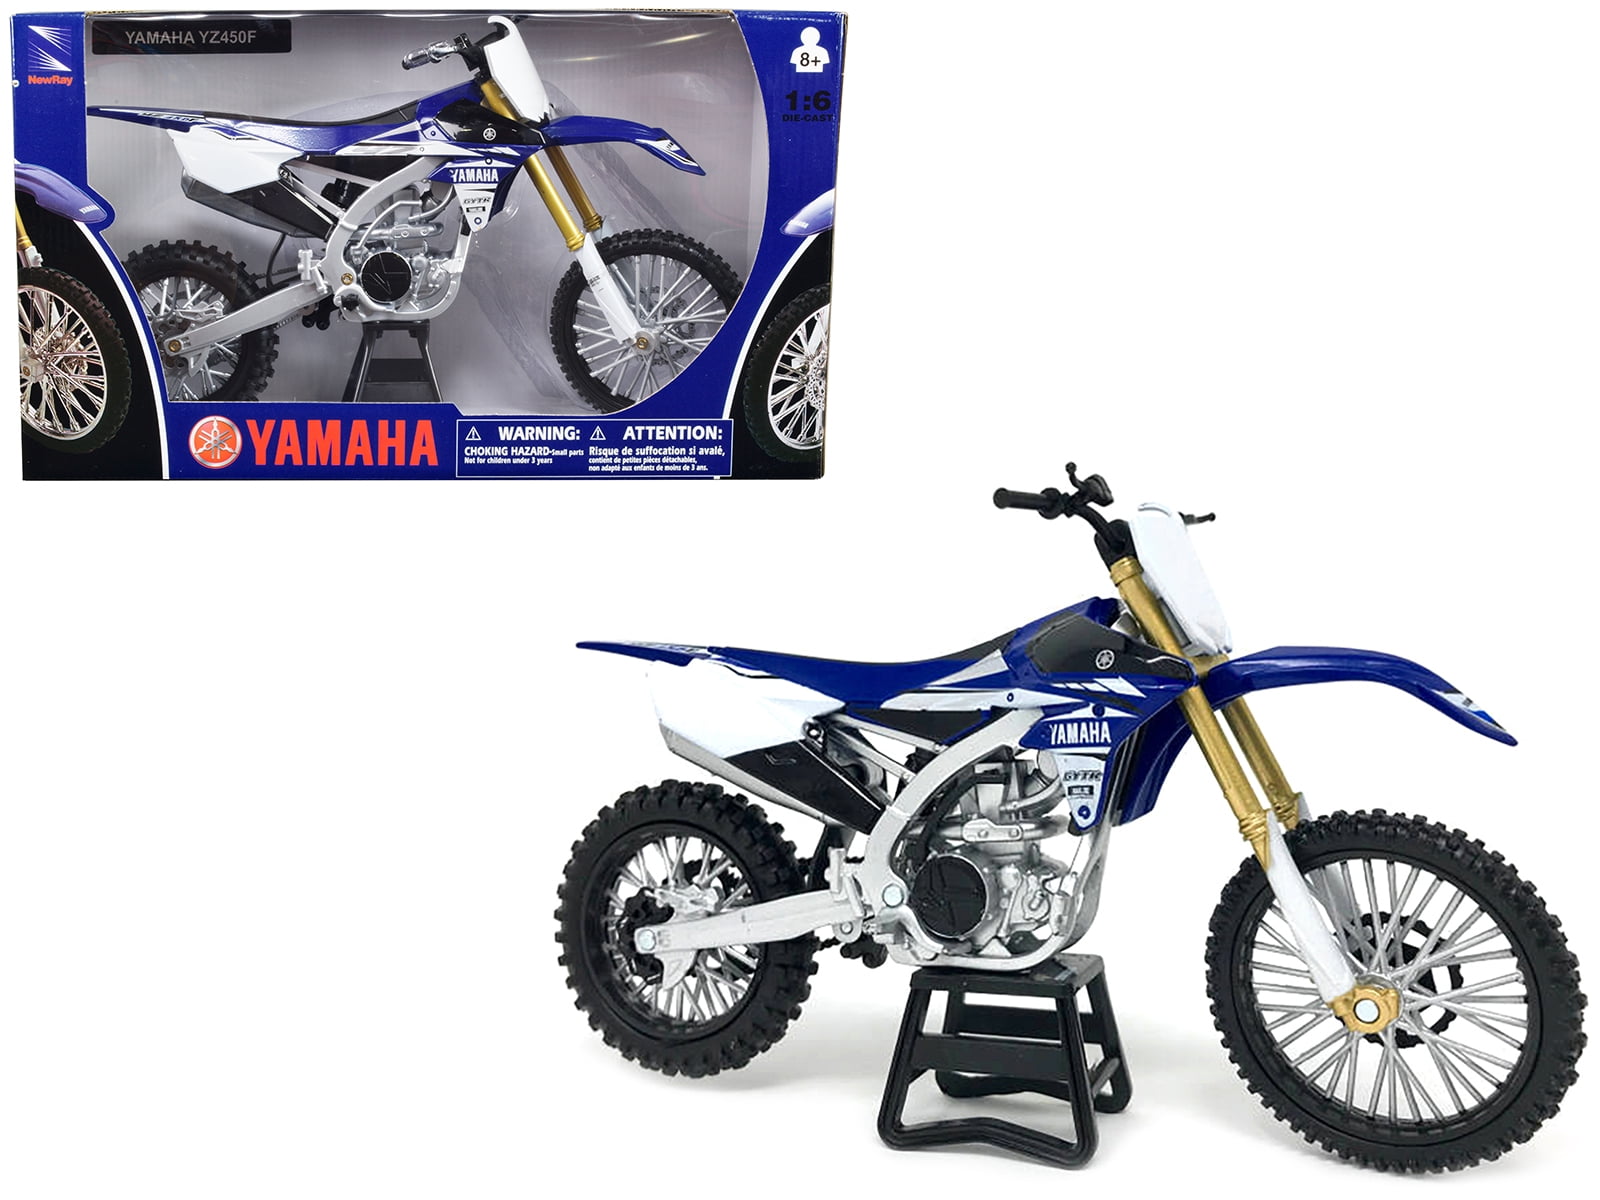 Moto Yamaha 450 à venda em todo o Brasil!